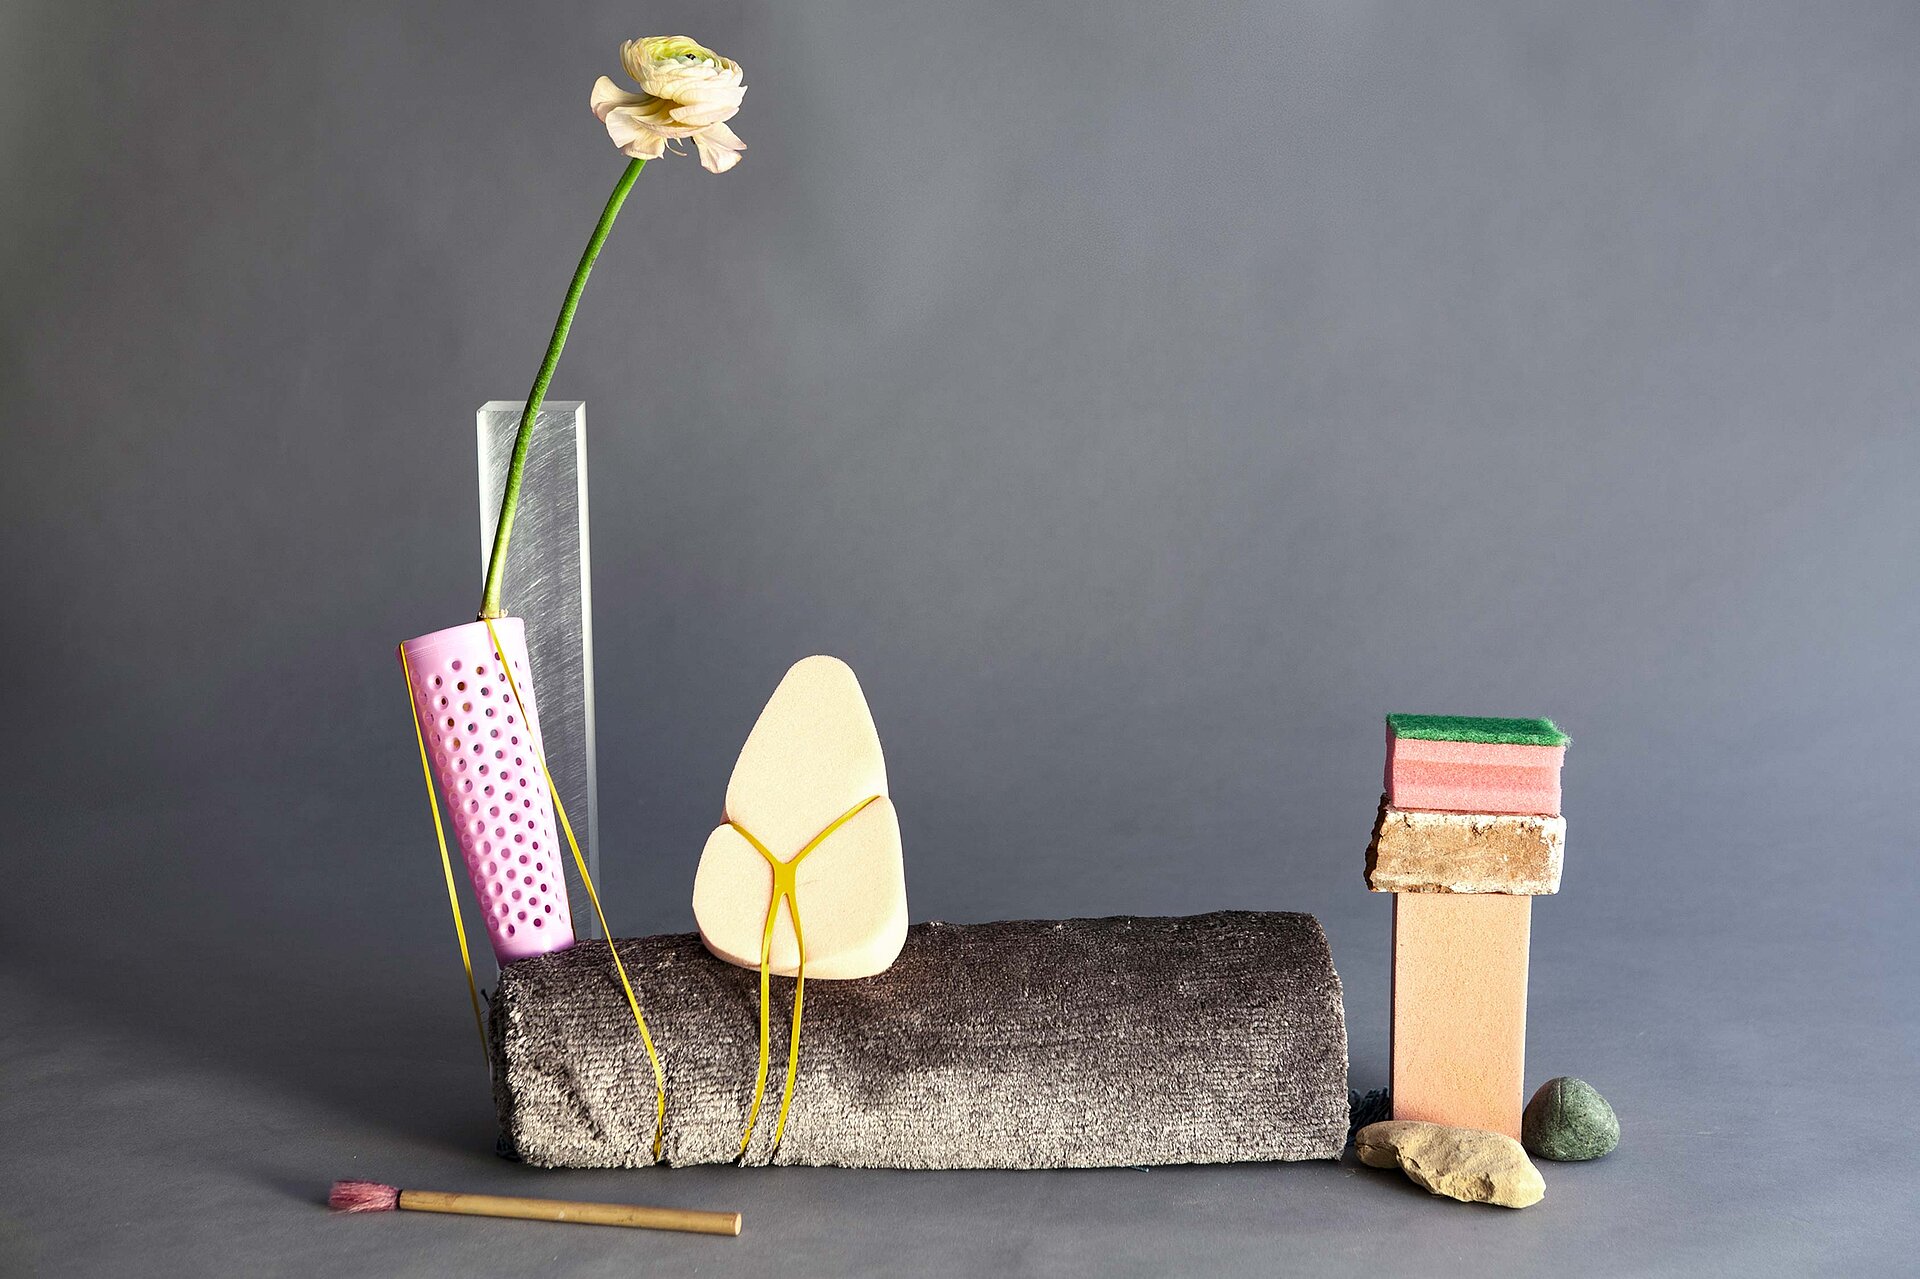 MIK atelier design objects sponge flower branding bern